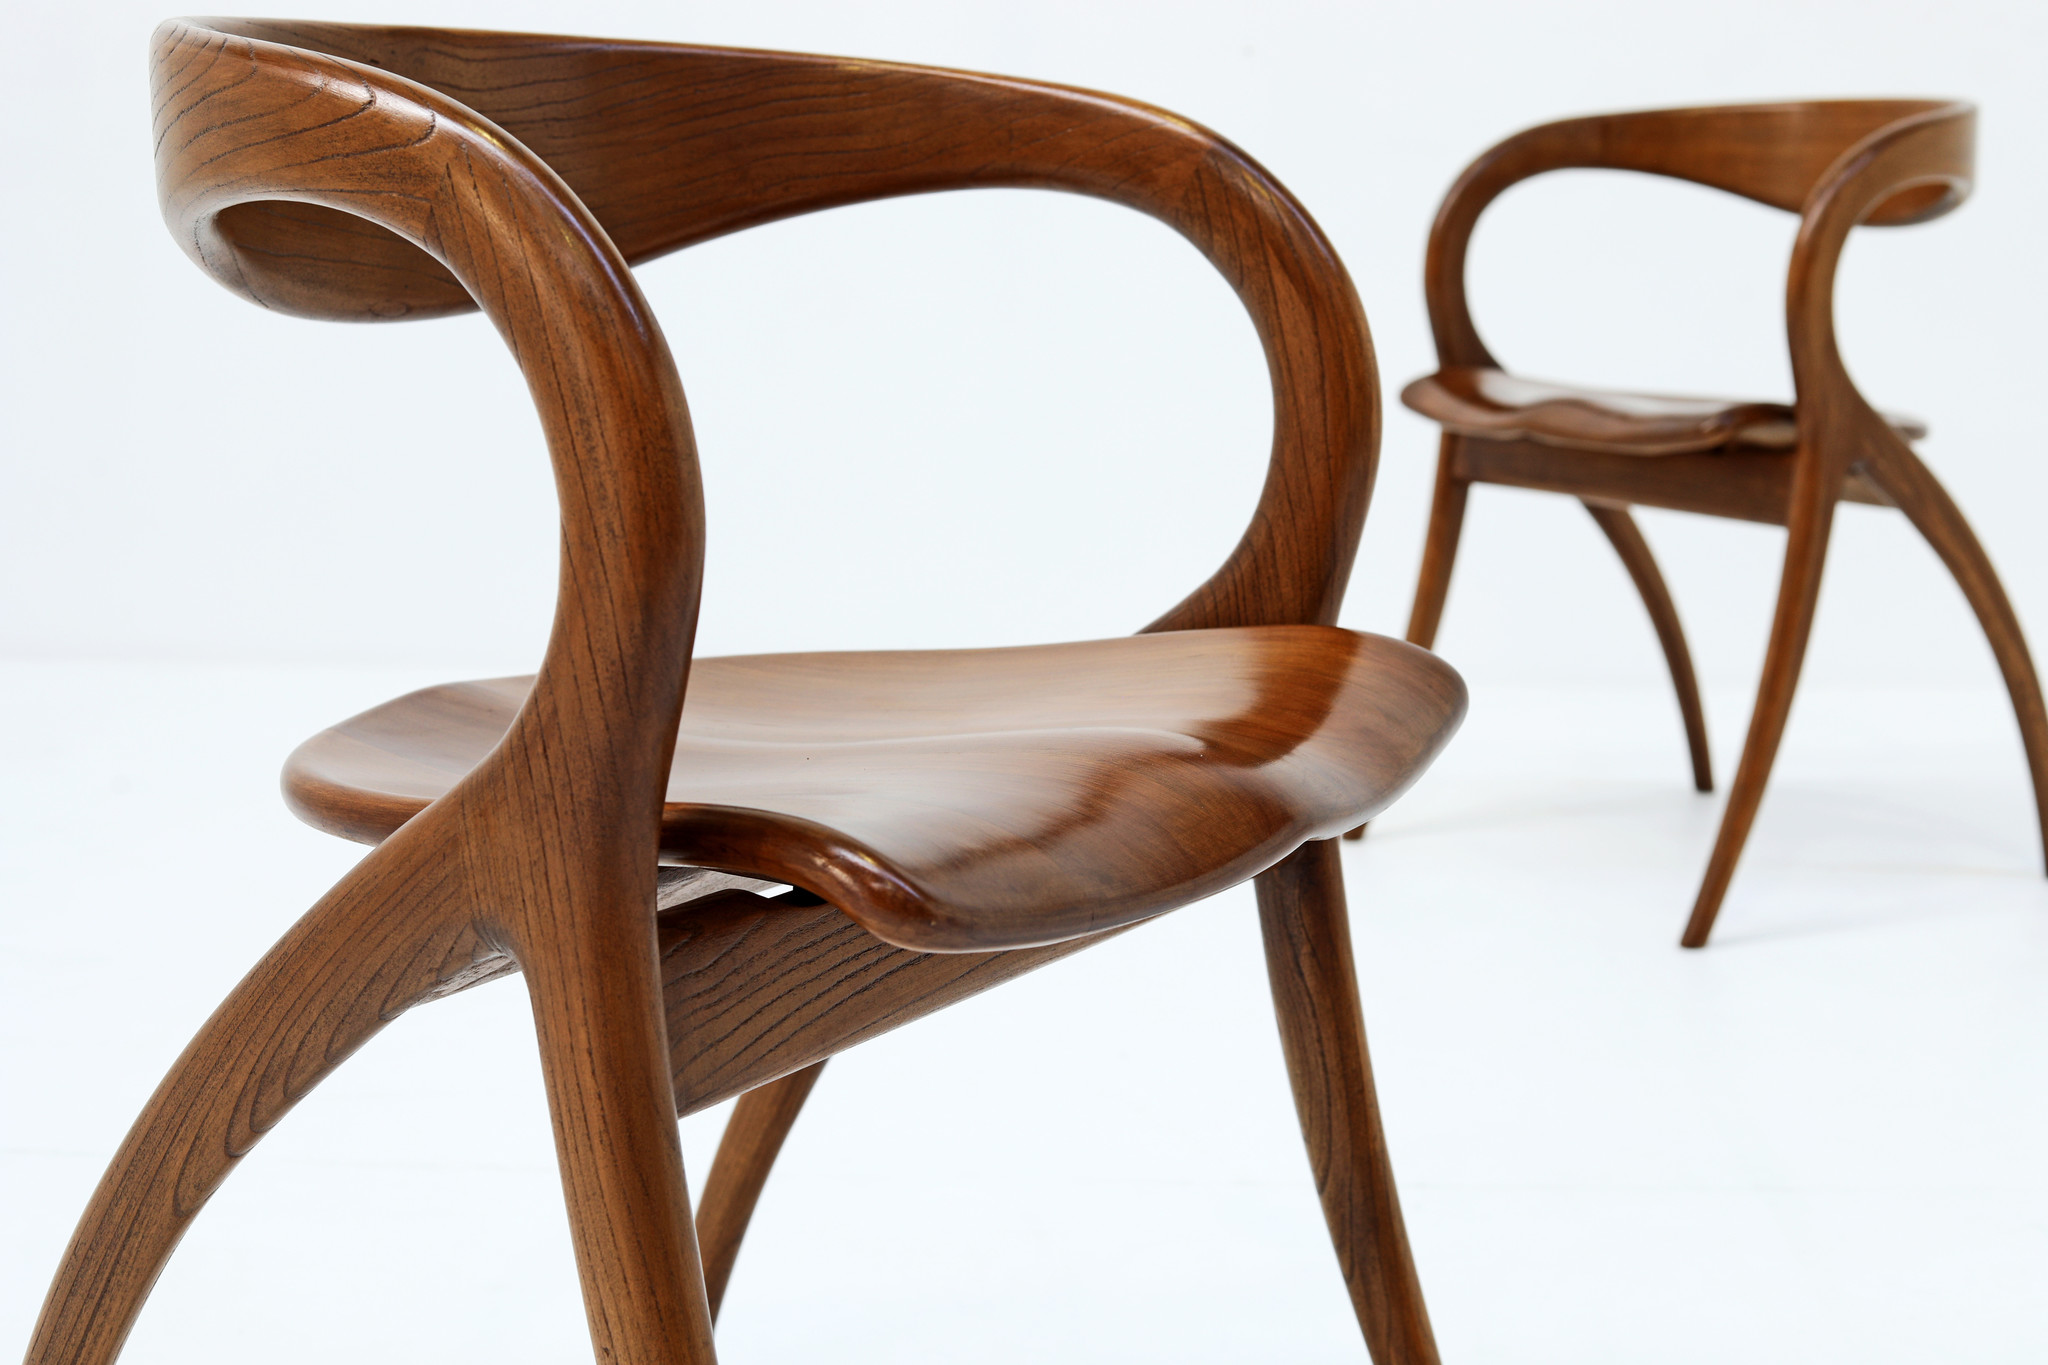 Italian Sculptural Chairs by A. Sibau